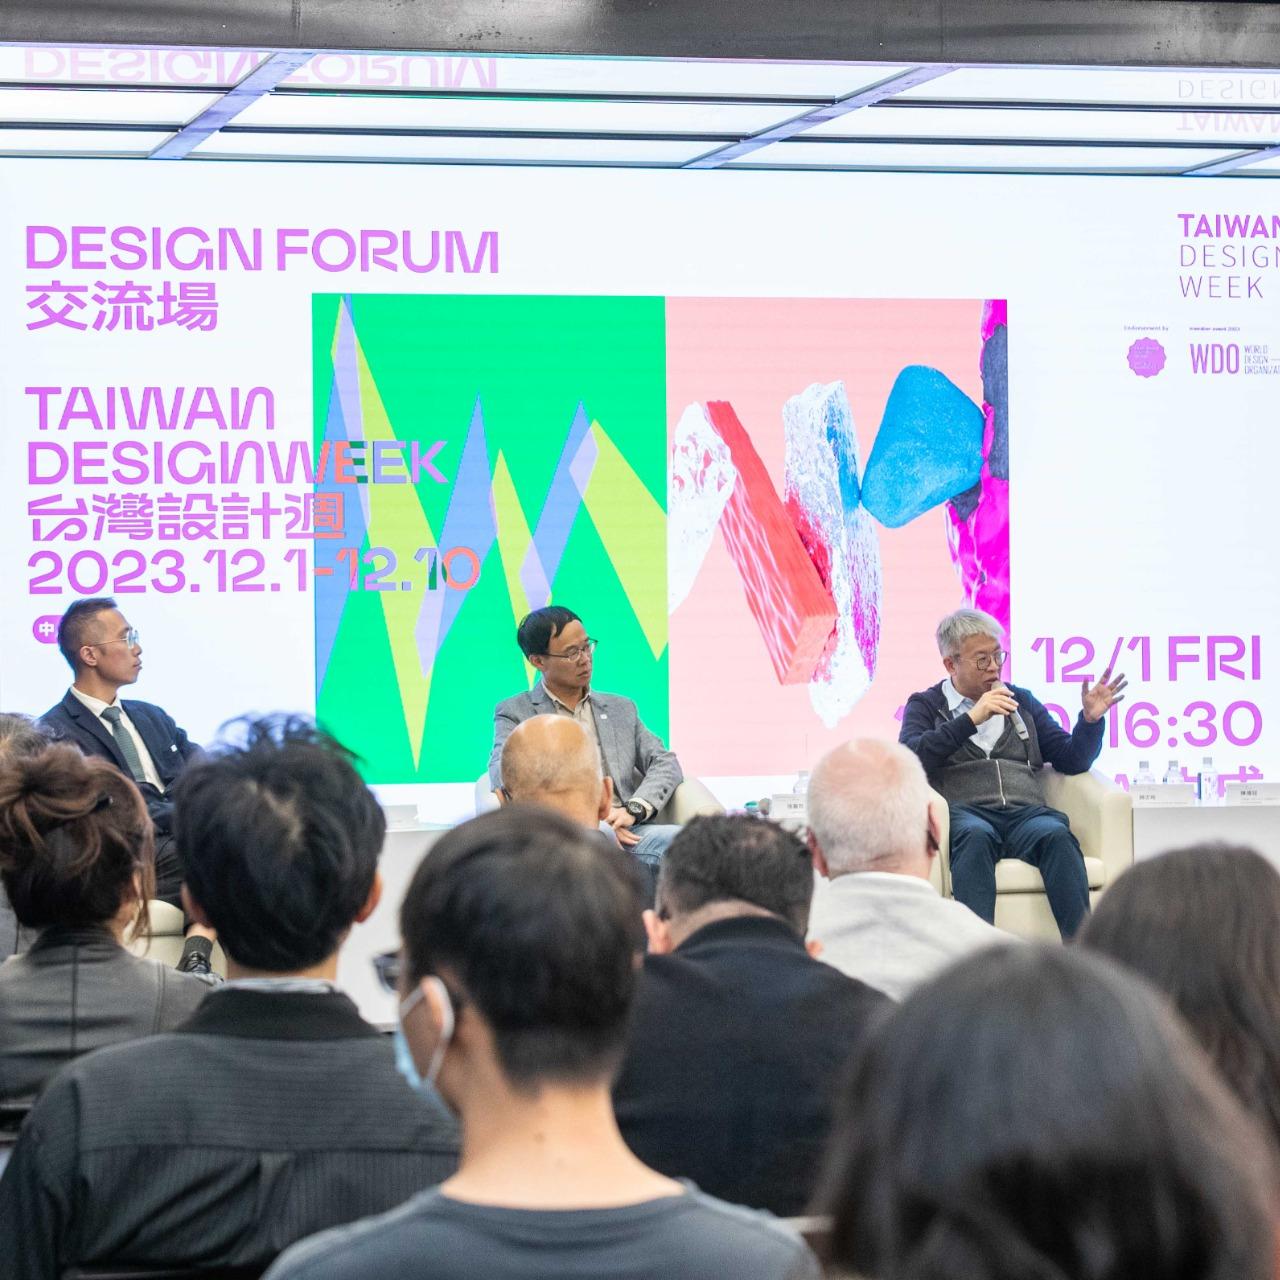 林思翰 HansLin 林思翰 台灣設計週 Taiwan Design Week 設計思維與AI生成 The Intersection of Design Thinking and AI Generation